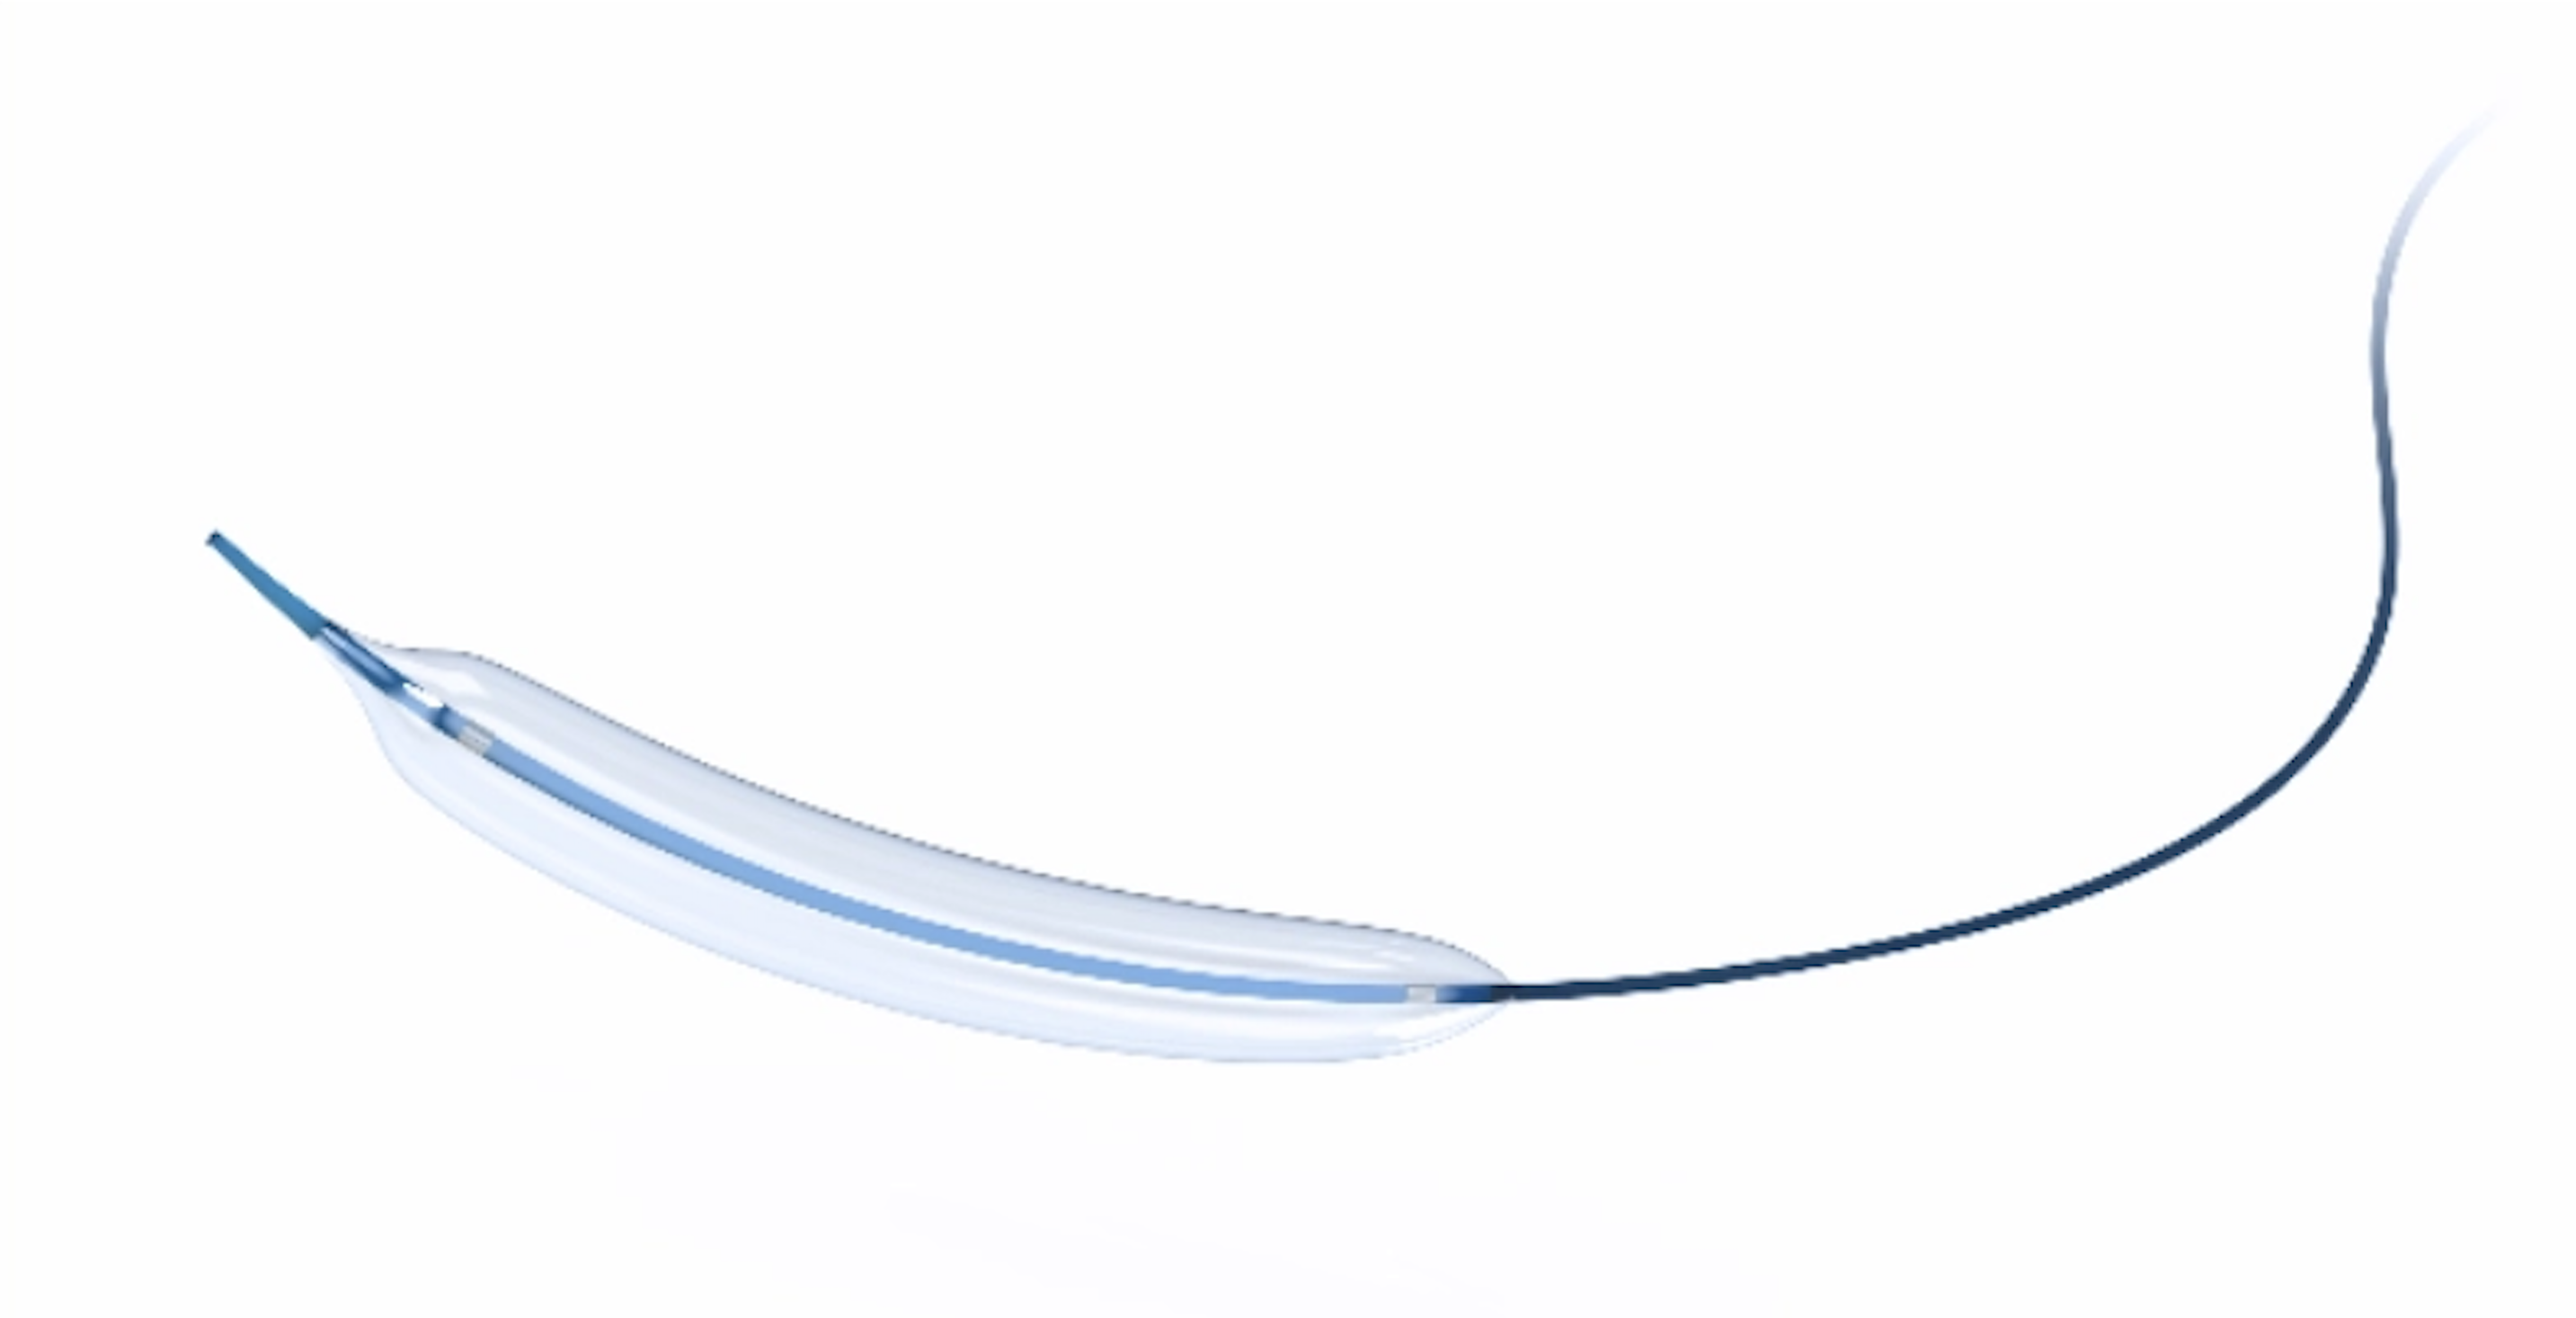 pta balloon dilatation catheter